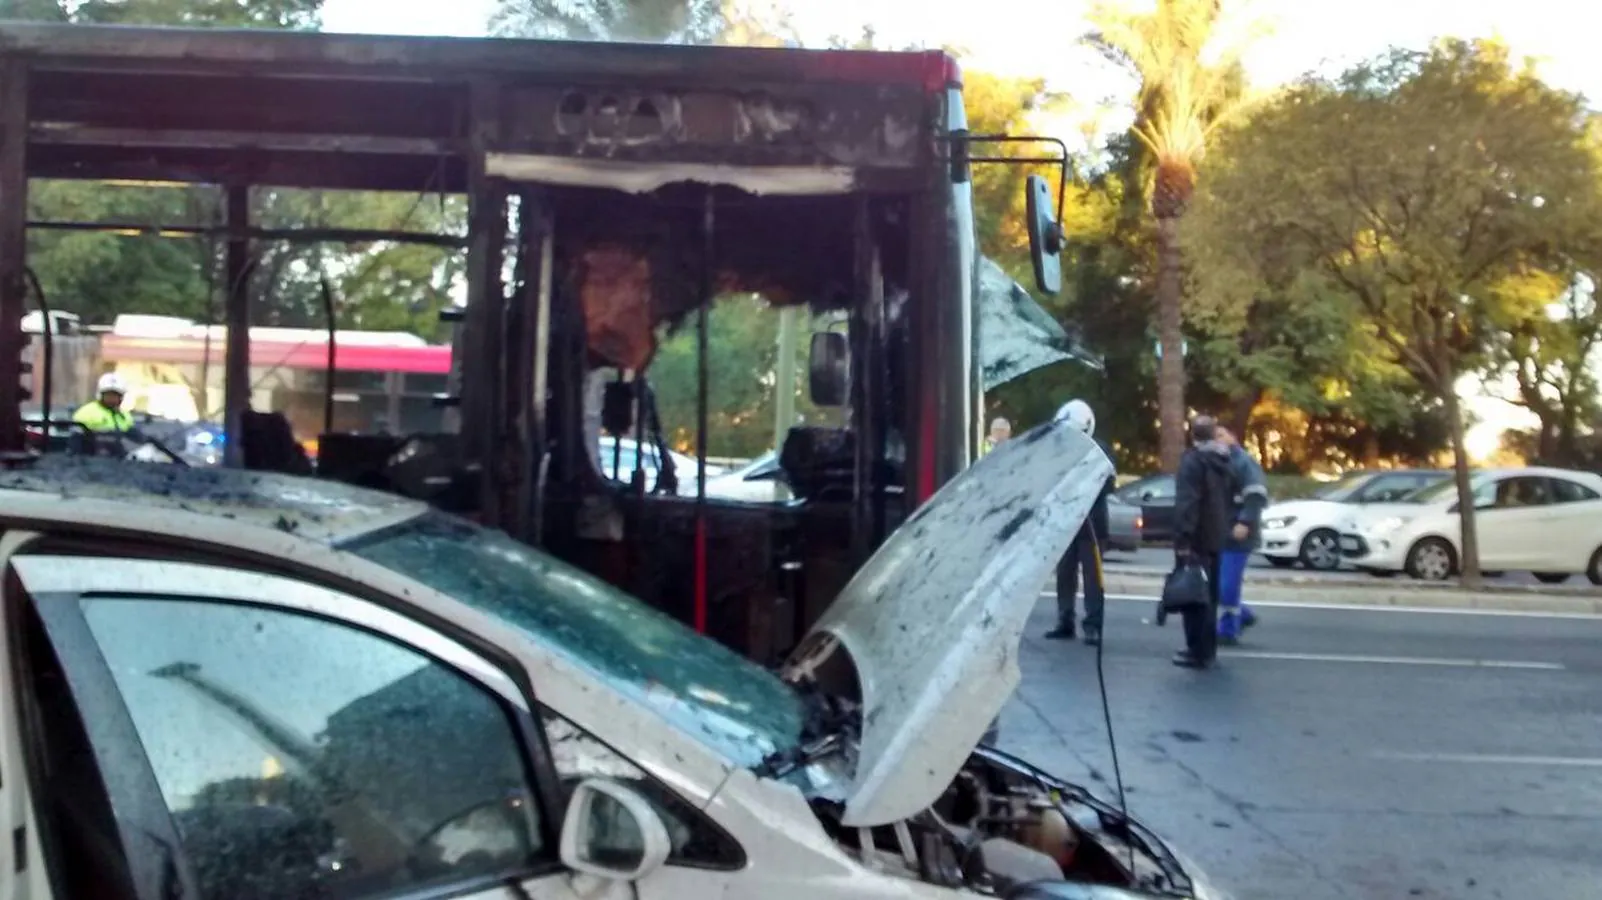 El aparatoso incendio del autobús de Tussam en Sevilla, en imágenes